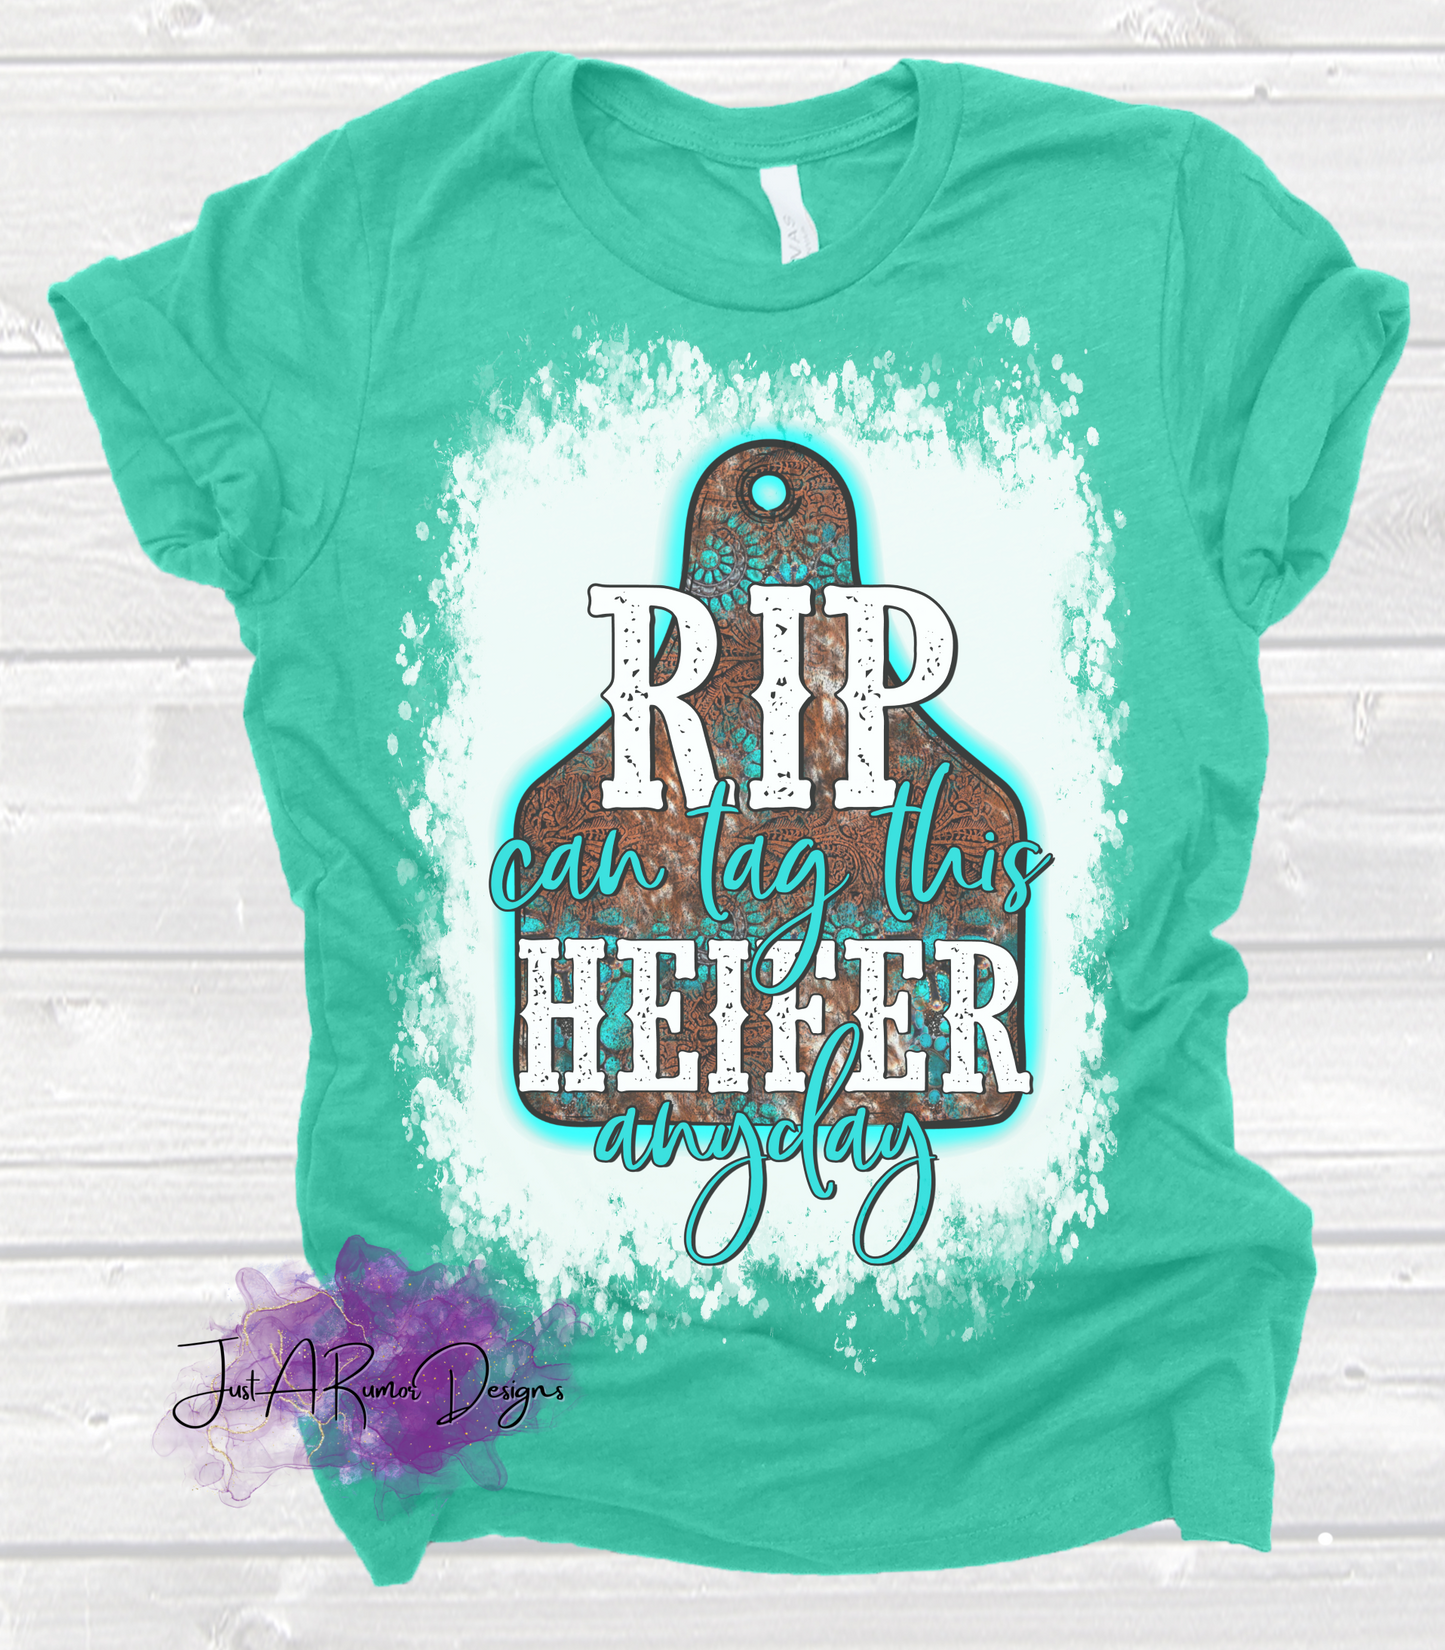 Tag This Heifer Shirt